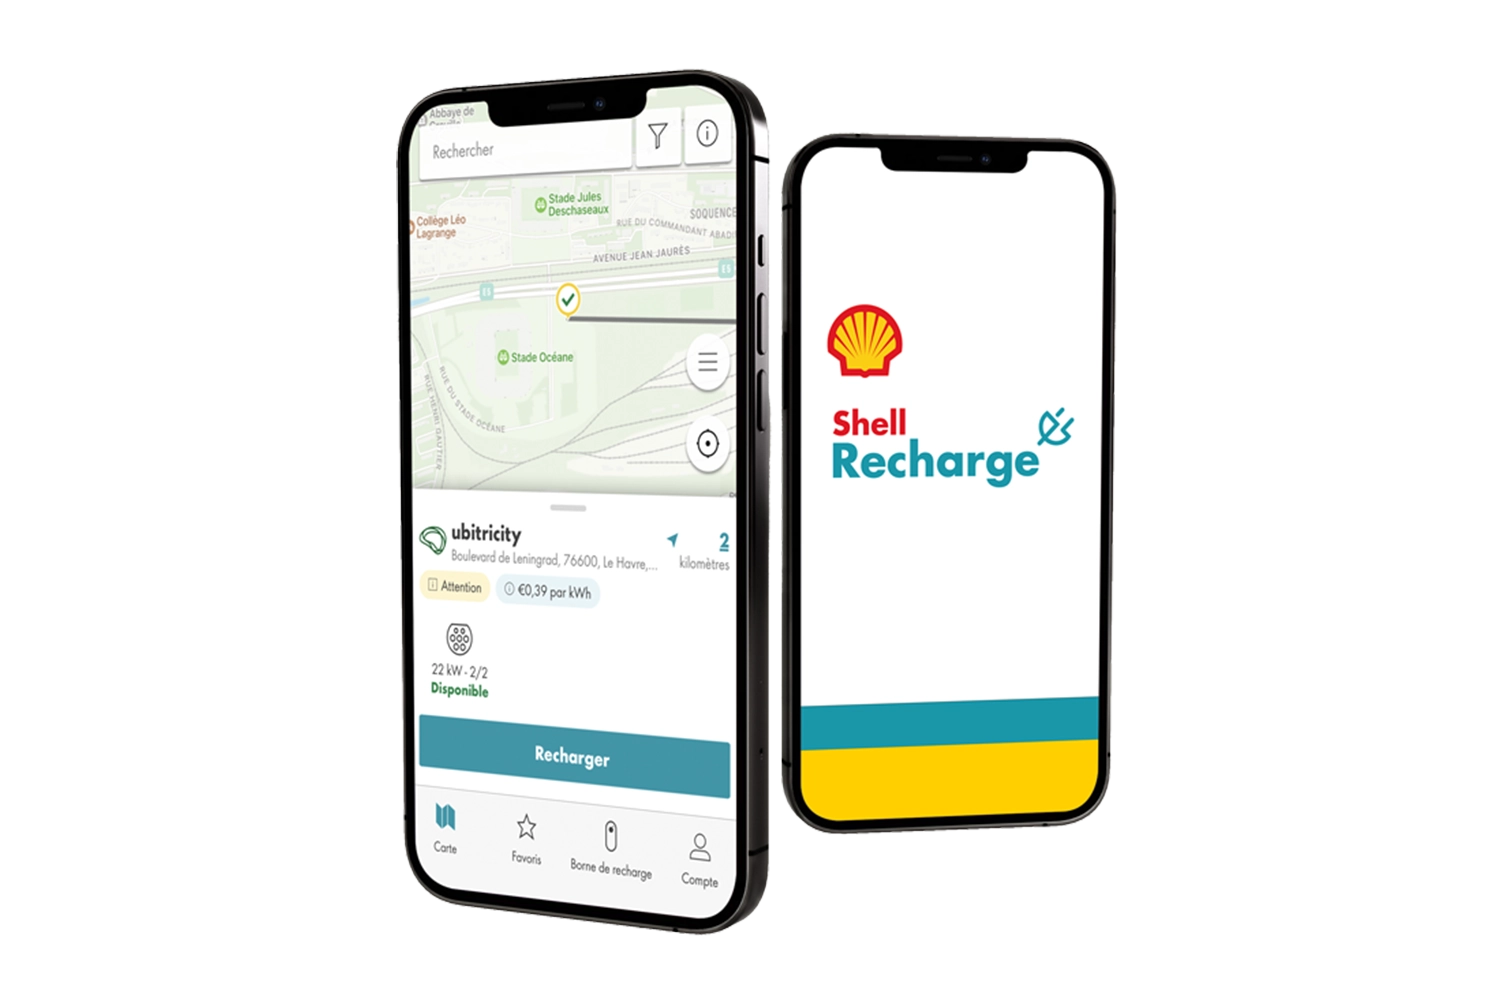 Extrait du réseau de recharge Shell Recharge sur un smartphone avec une borne de recharge publique exploitée par ubitricity.